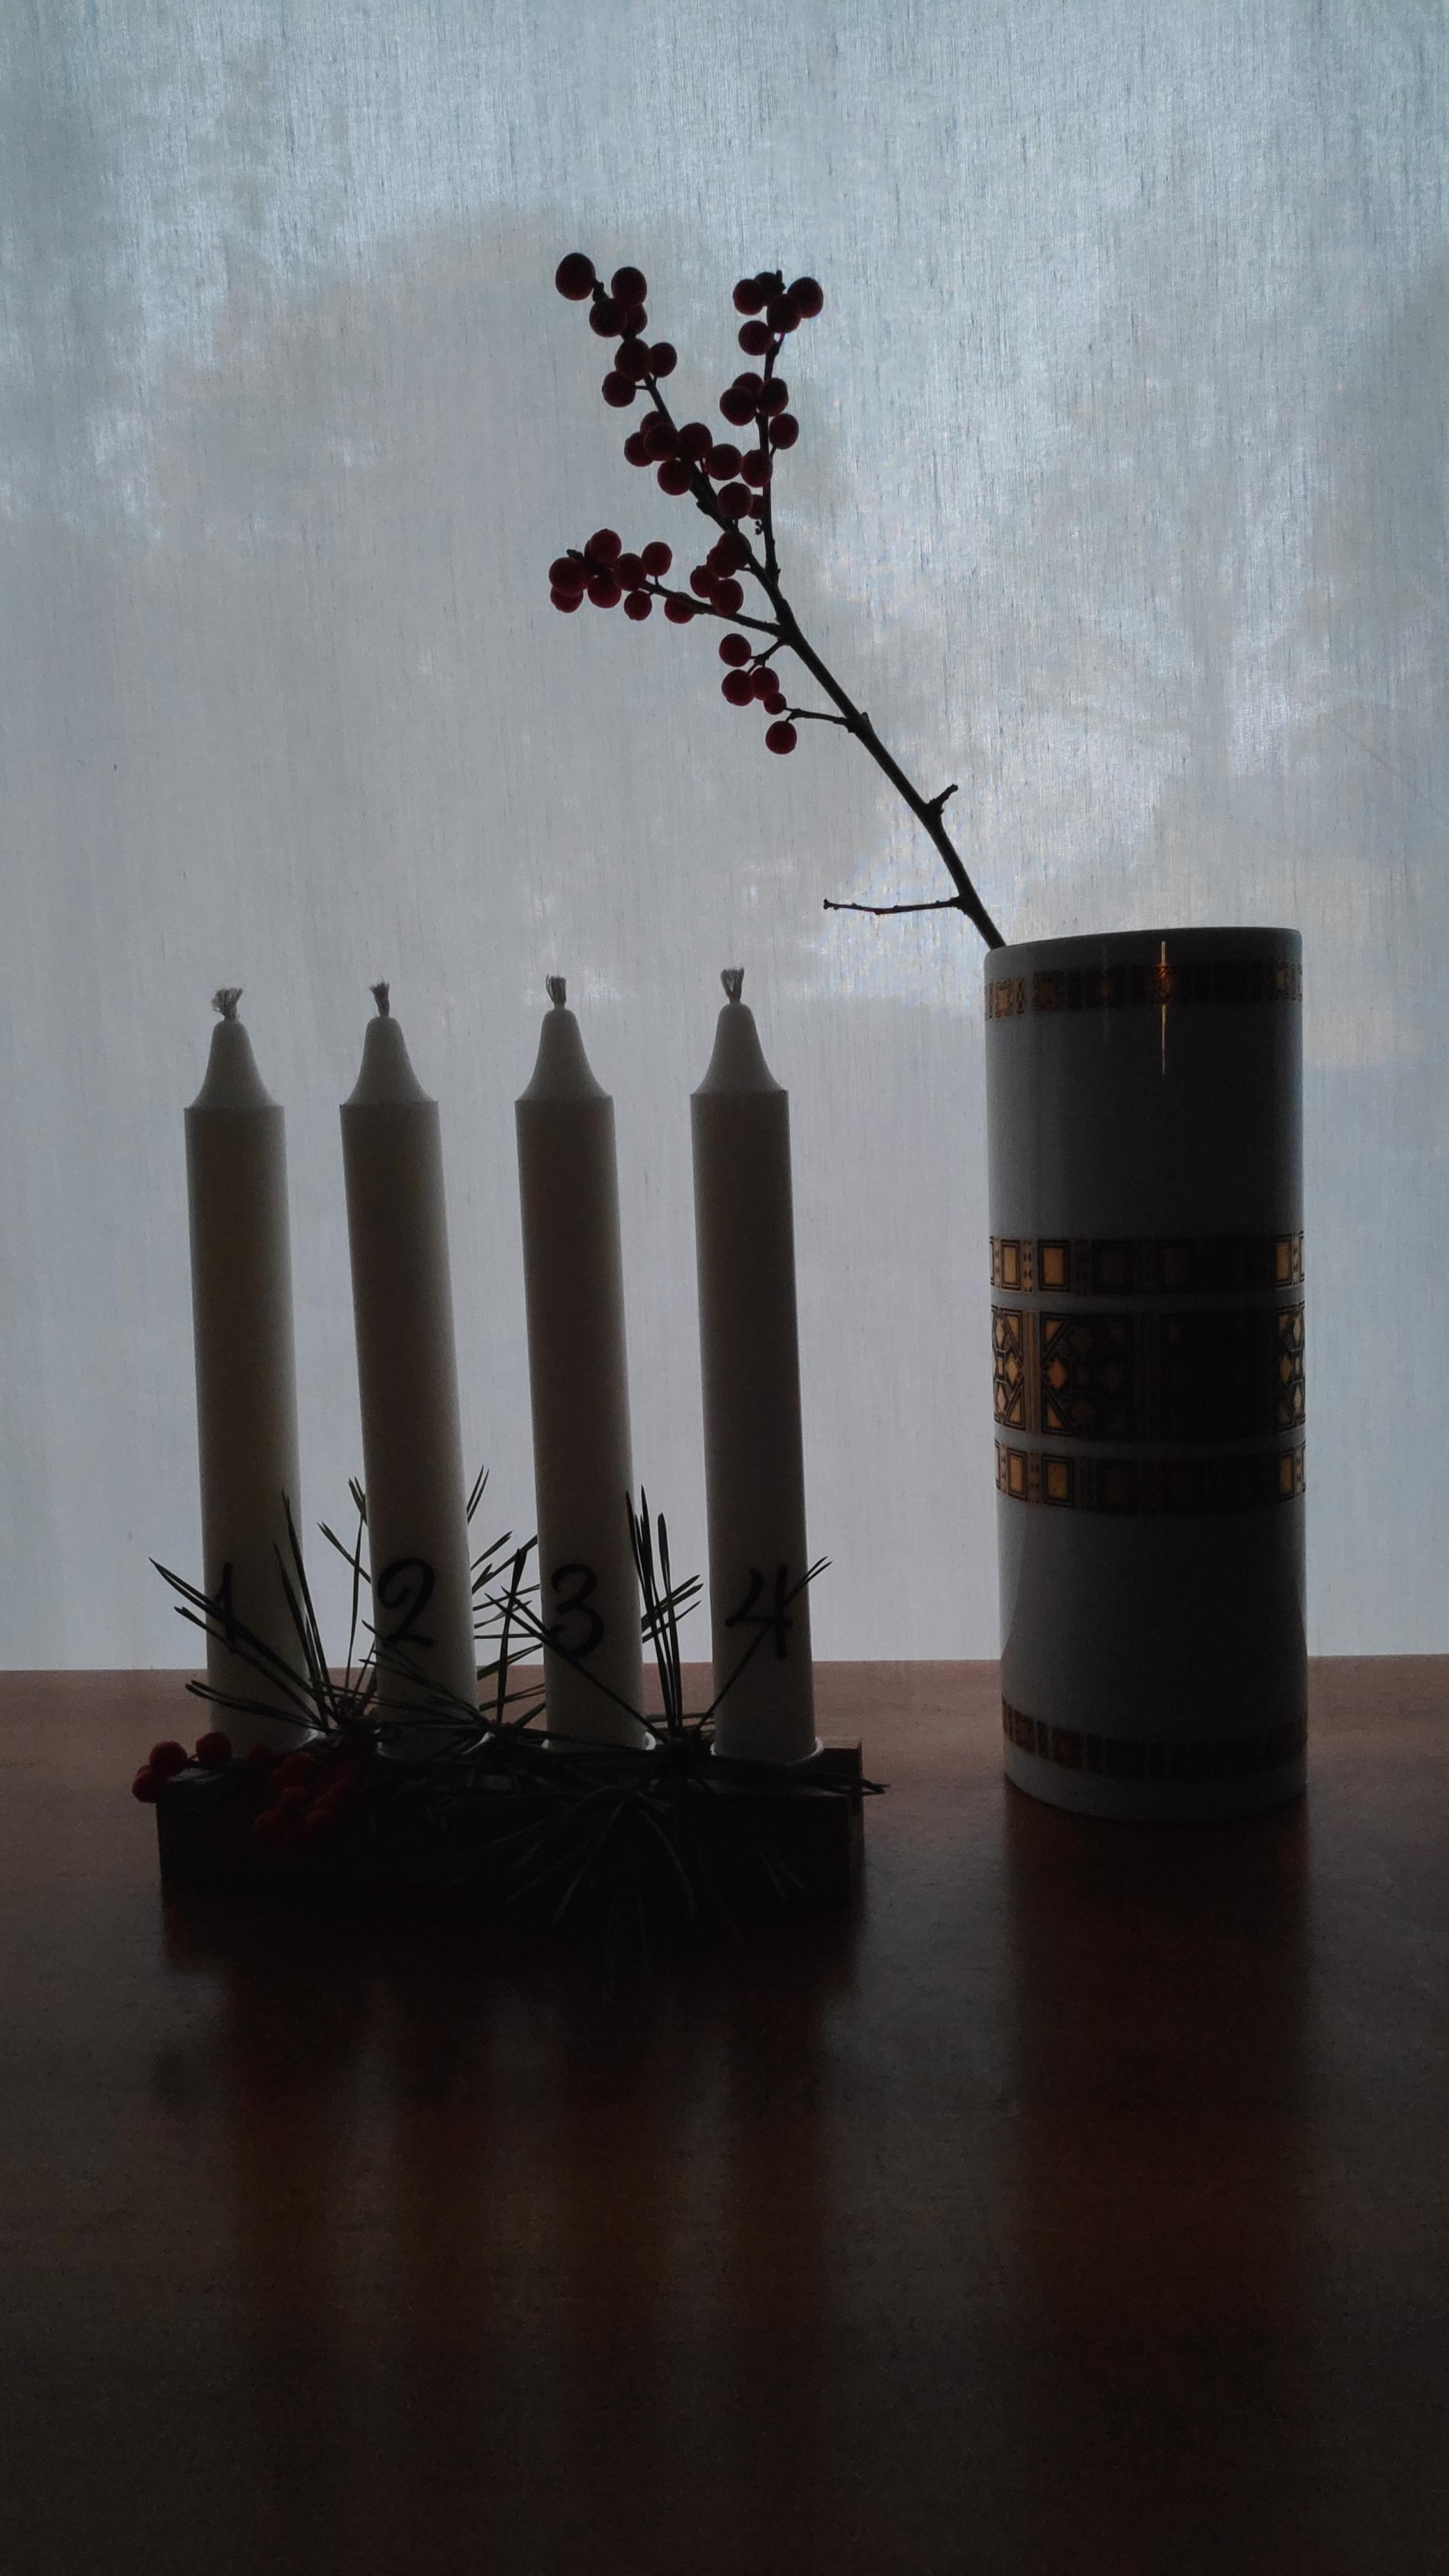 .Bevor Farben aufwachen.
#Adventskranz #Adventsleiste #Kerzen #Tradition #Adventsdeko #Blumenvase #Gold